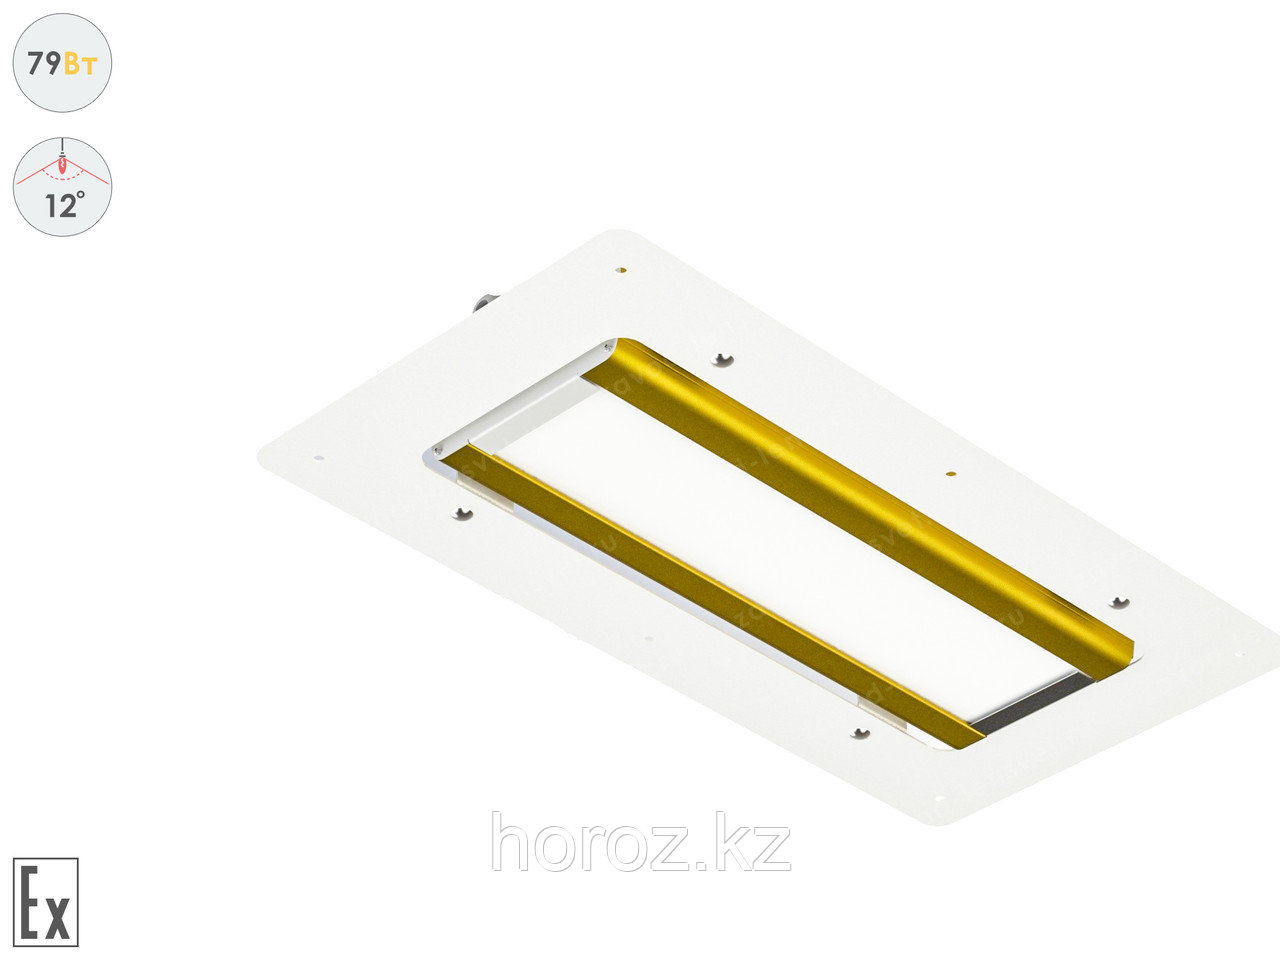 Светодиодный светильник Прожектор Взрывозащищенный GOLD, для АЗС , 79 Вт, 12°